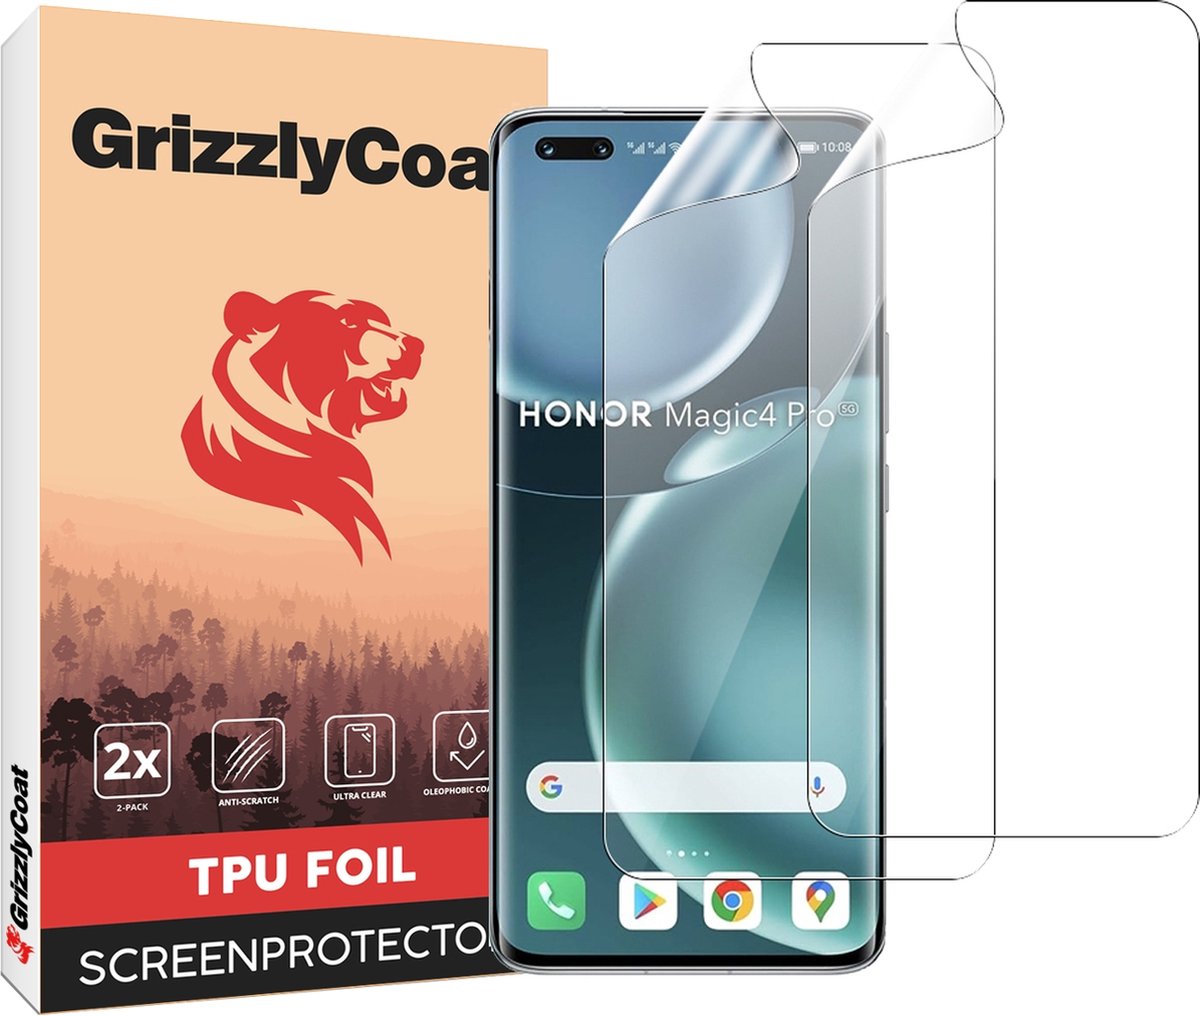 GrizzlyCoat - Screenprotector geschikt voor HONOR Magic 4 Pro Hydrogel TPU | GrizzlyCoat Screenprotector - Case Friendly + Installatie Frame (2-Pack)